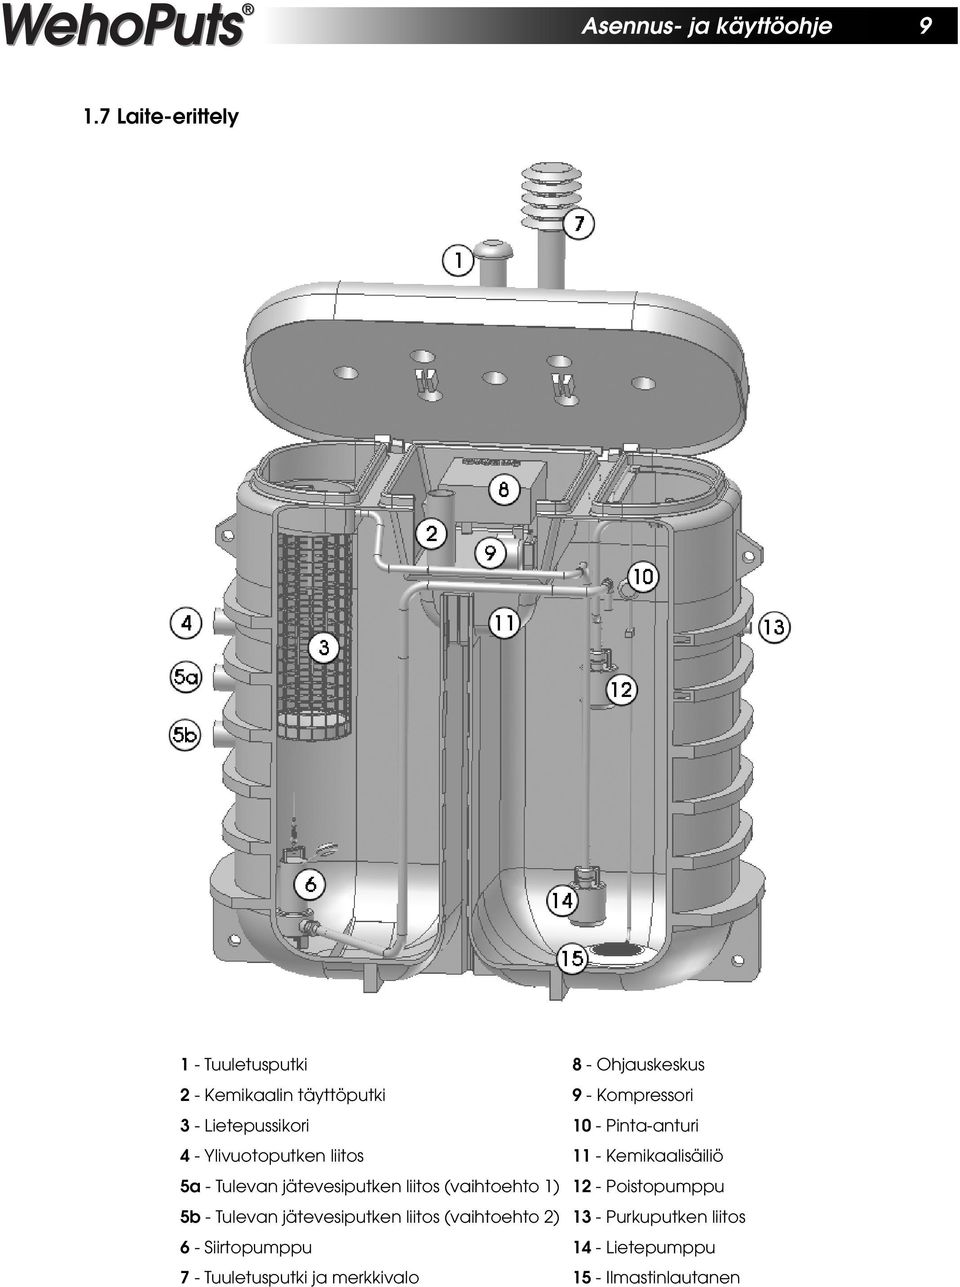 Lietepussikori 10 - Pinta-anturi 4 - Ylivuotoputken liitos 11 - Kemikaalisäiliö 5a - Tulevan jätevesiputken